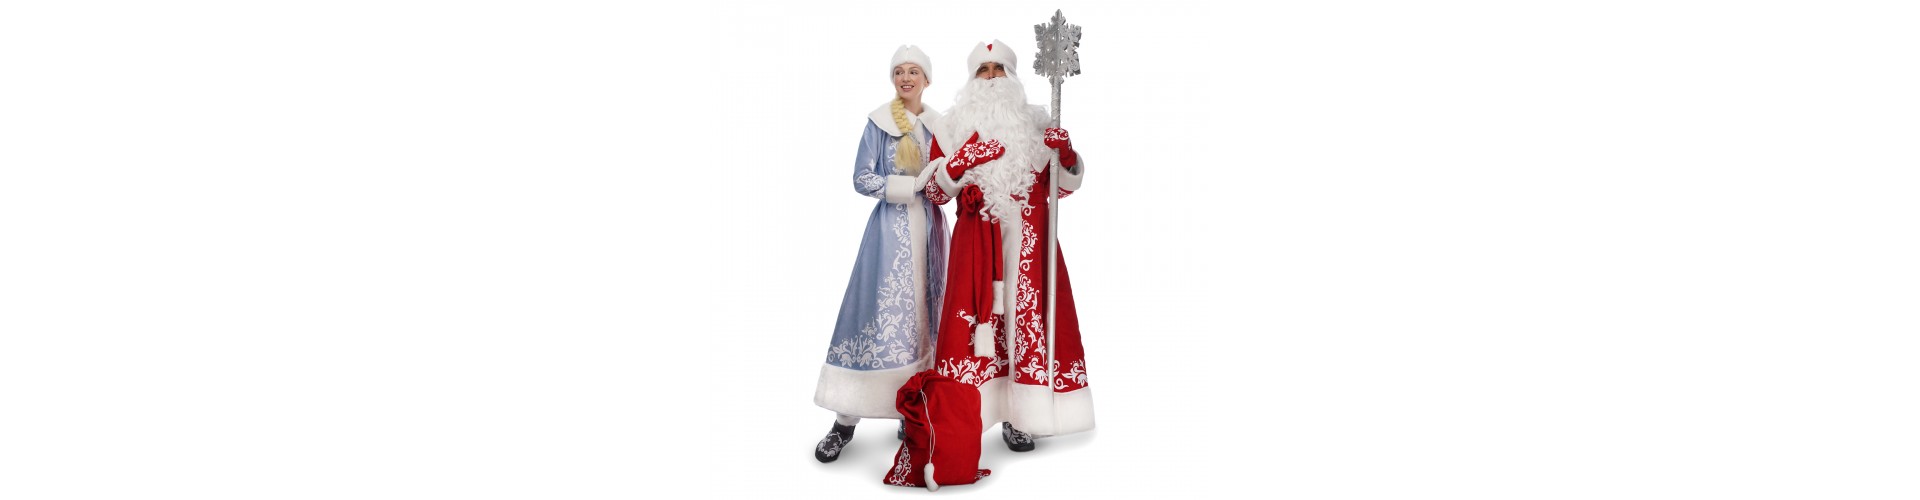 Покупаем новогодние костюмы в Черновцах быстро и выгодно